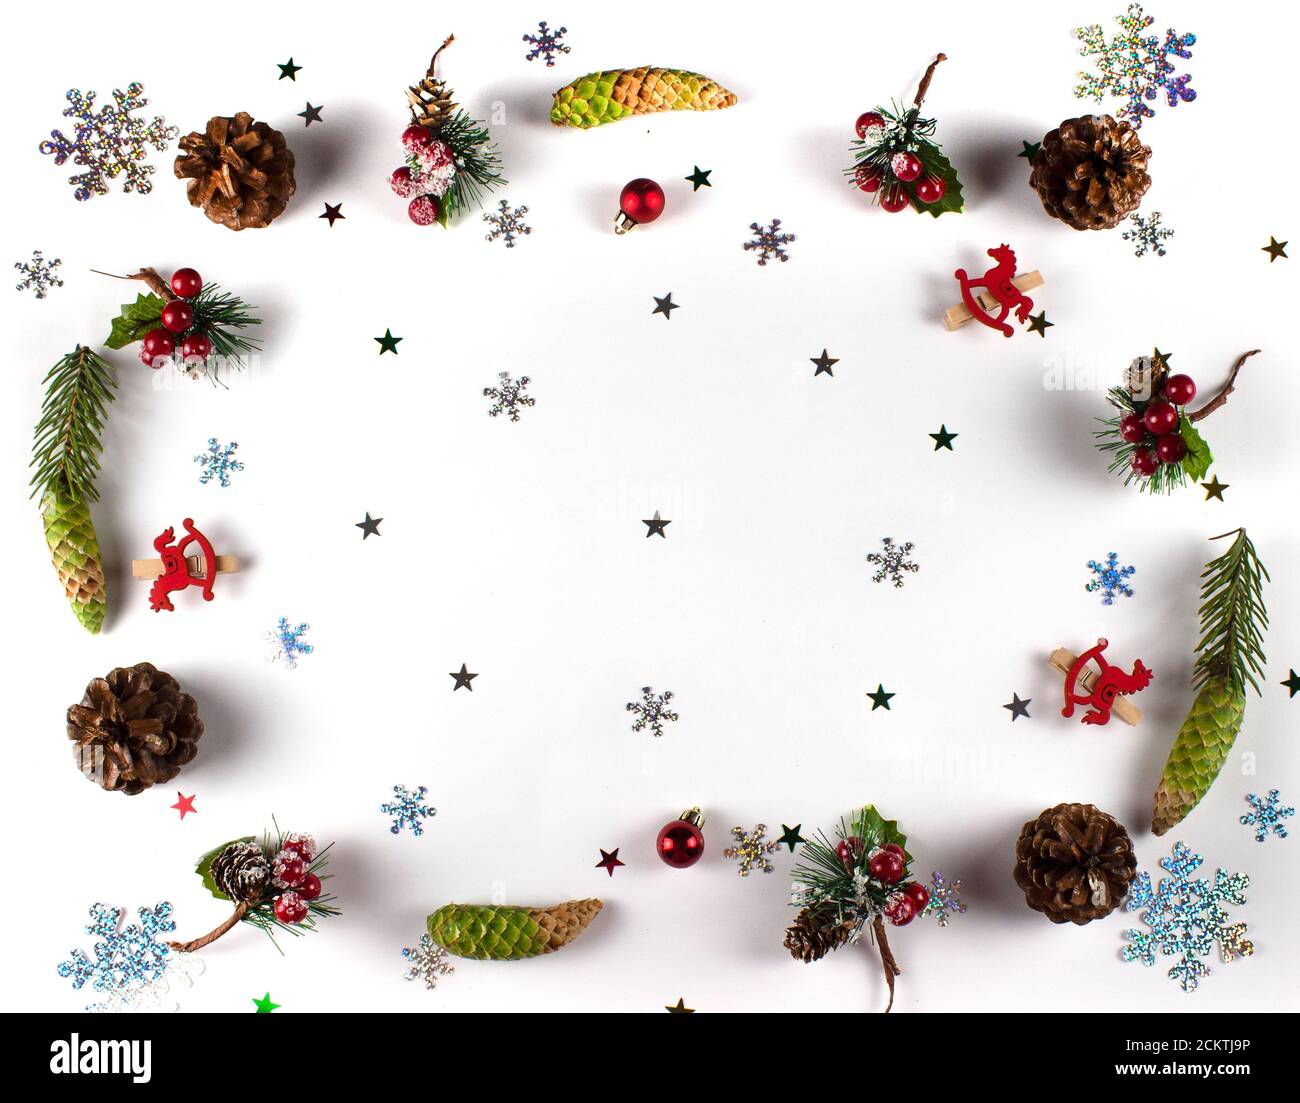 Décoration de Noël fond avec des cônes et des branches de sapin, des boules et des flocons de neige. Papier peint à thème de Noël sur fond plat. Plat de Noël Banque D'Images